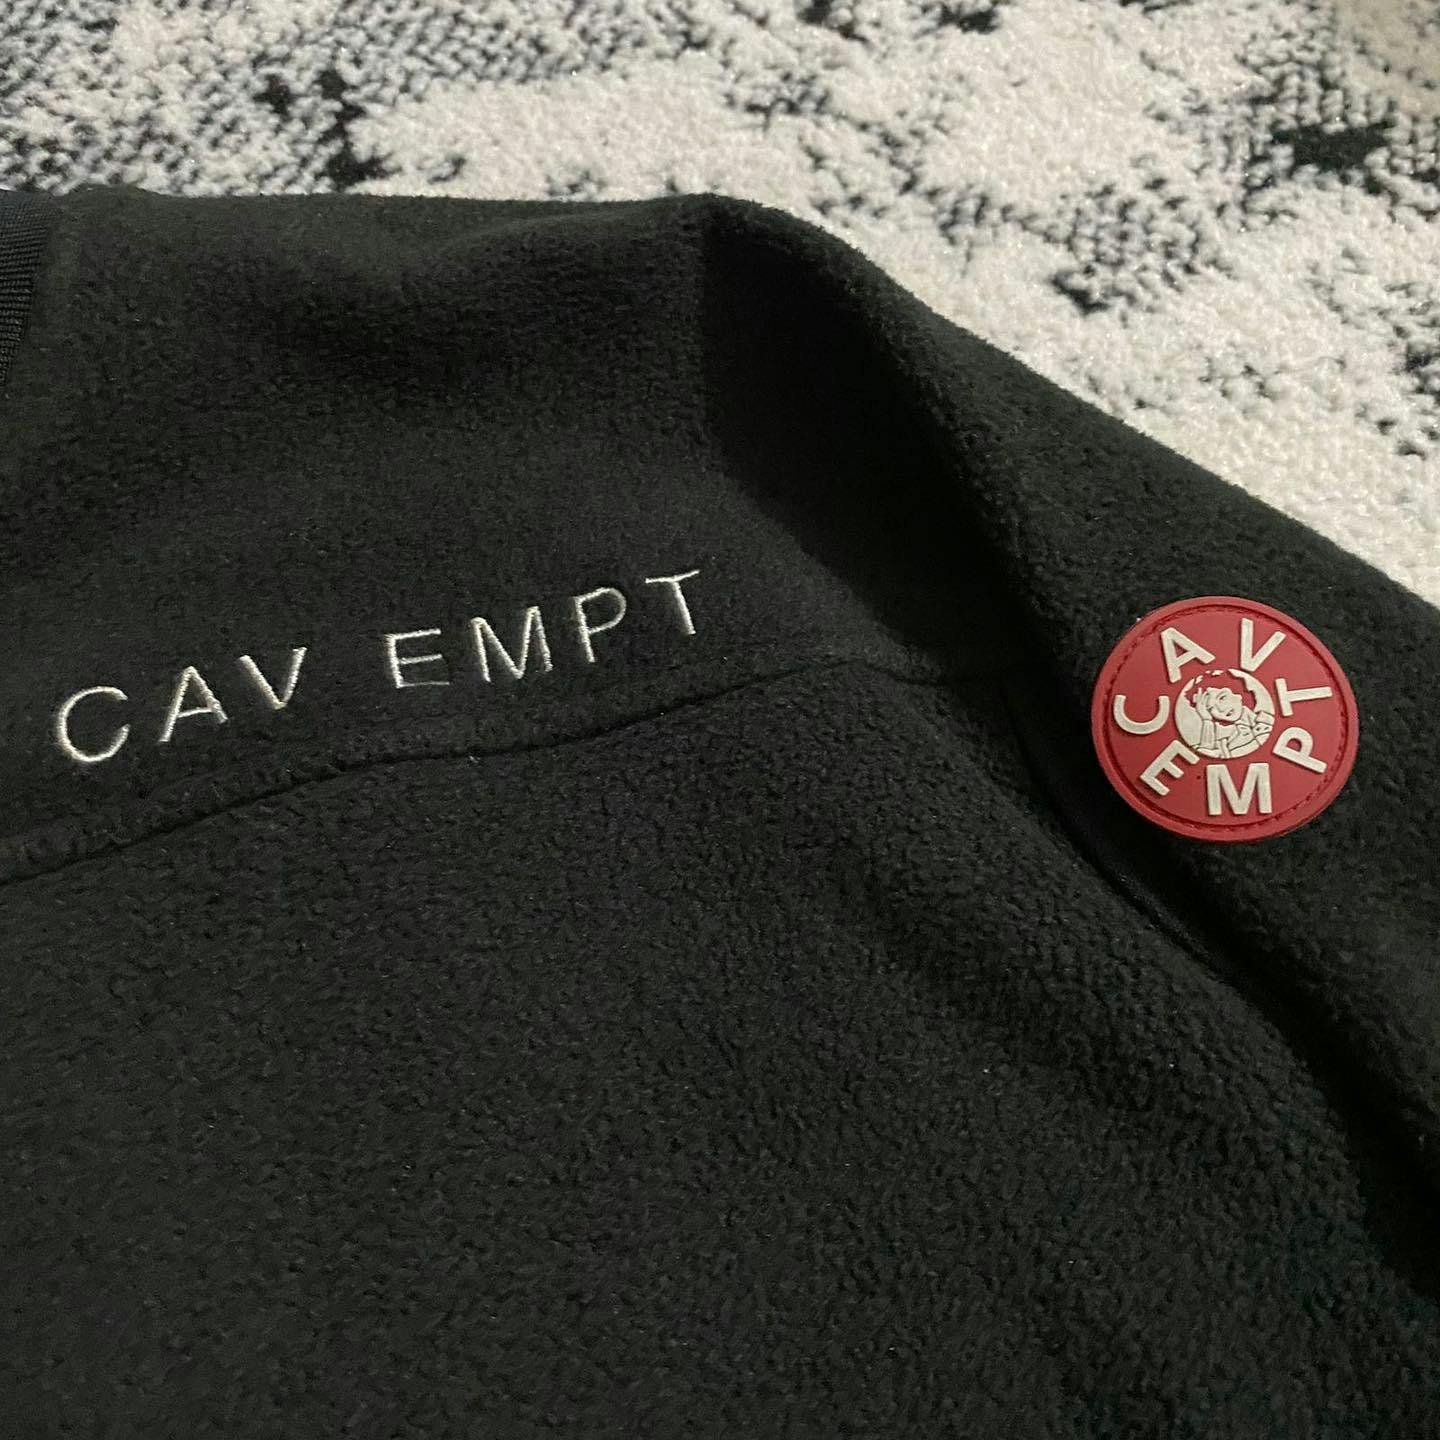 Cav Empt FW14 Fleece Jacket #2 Speckle Noise - 5